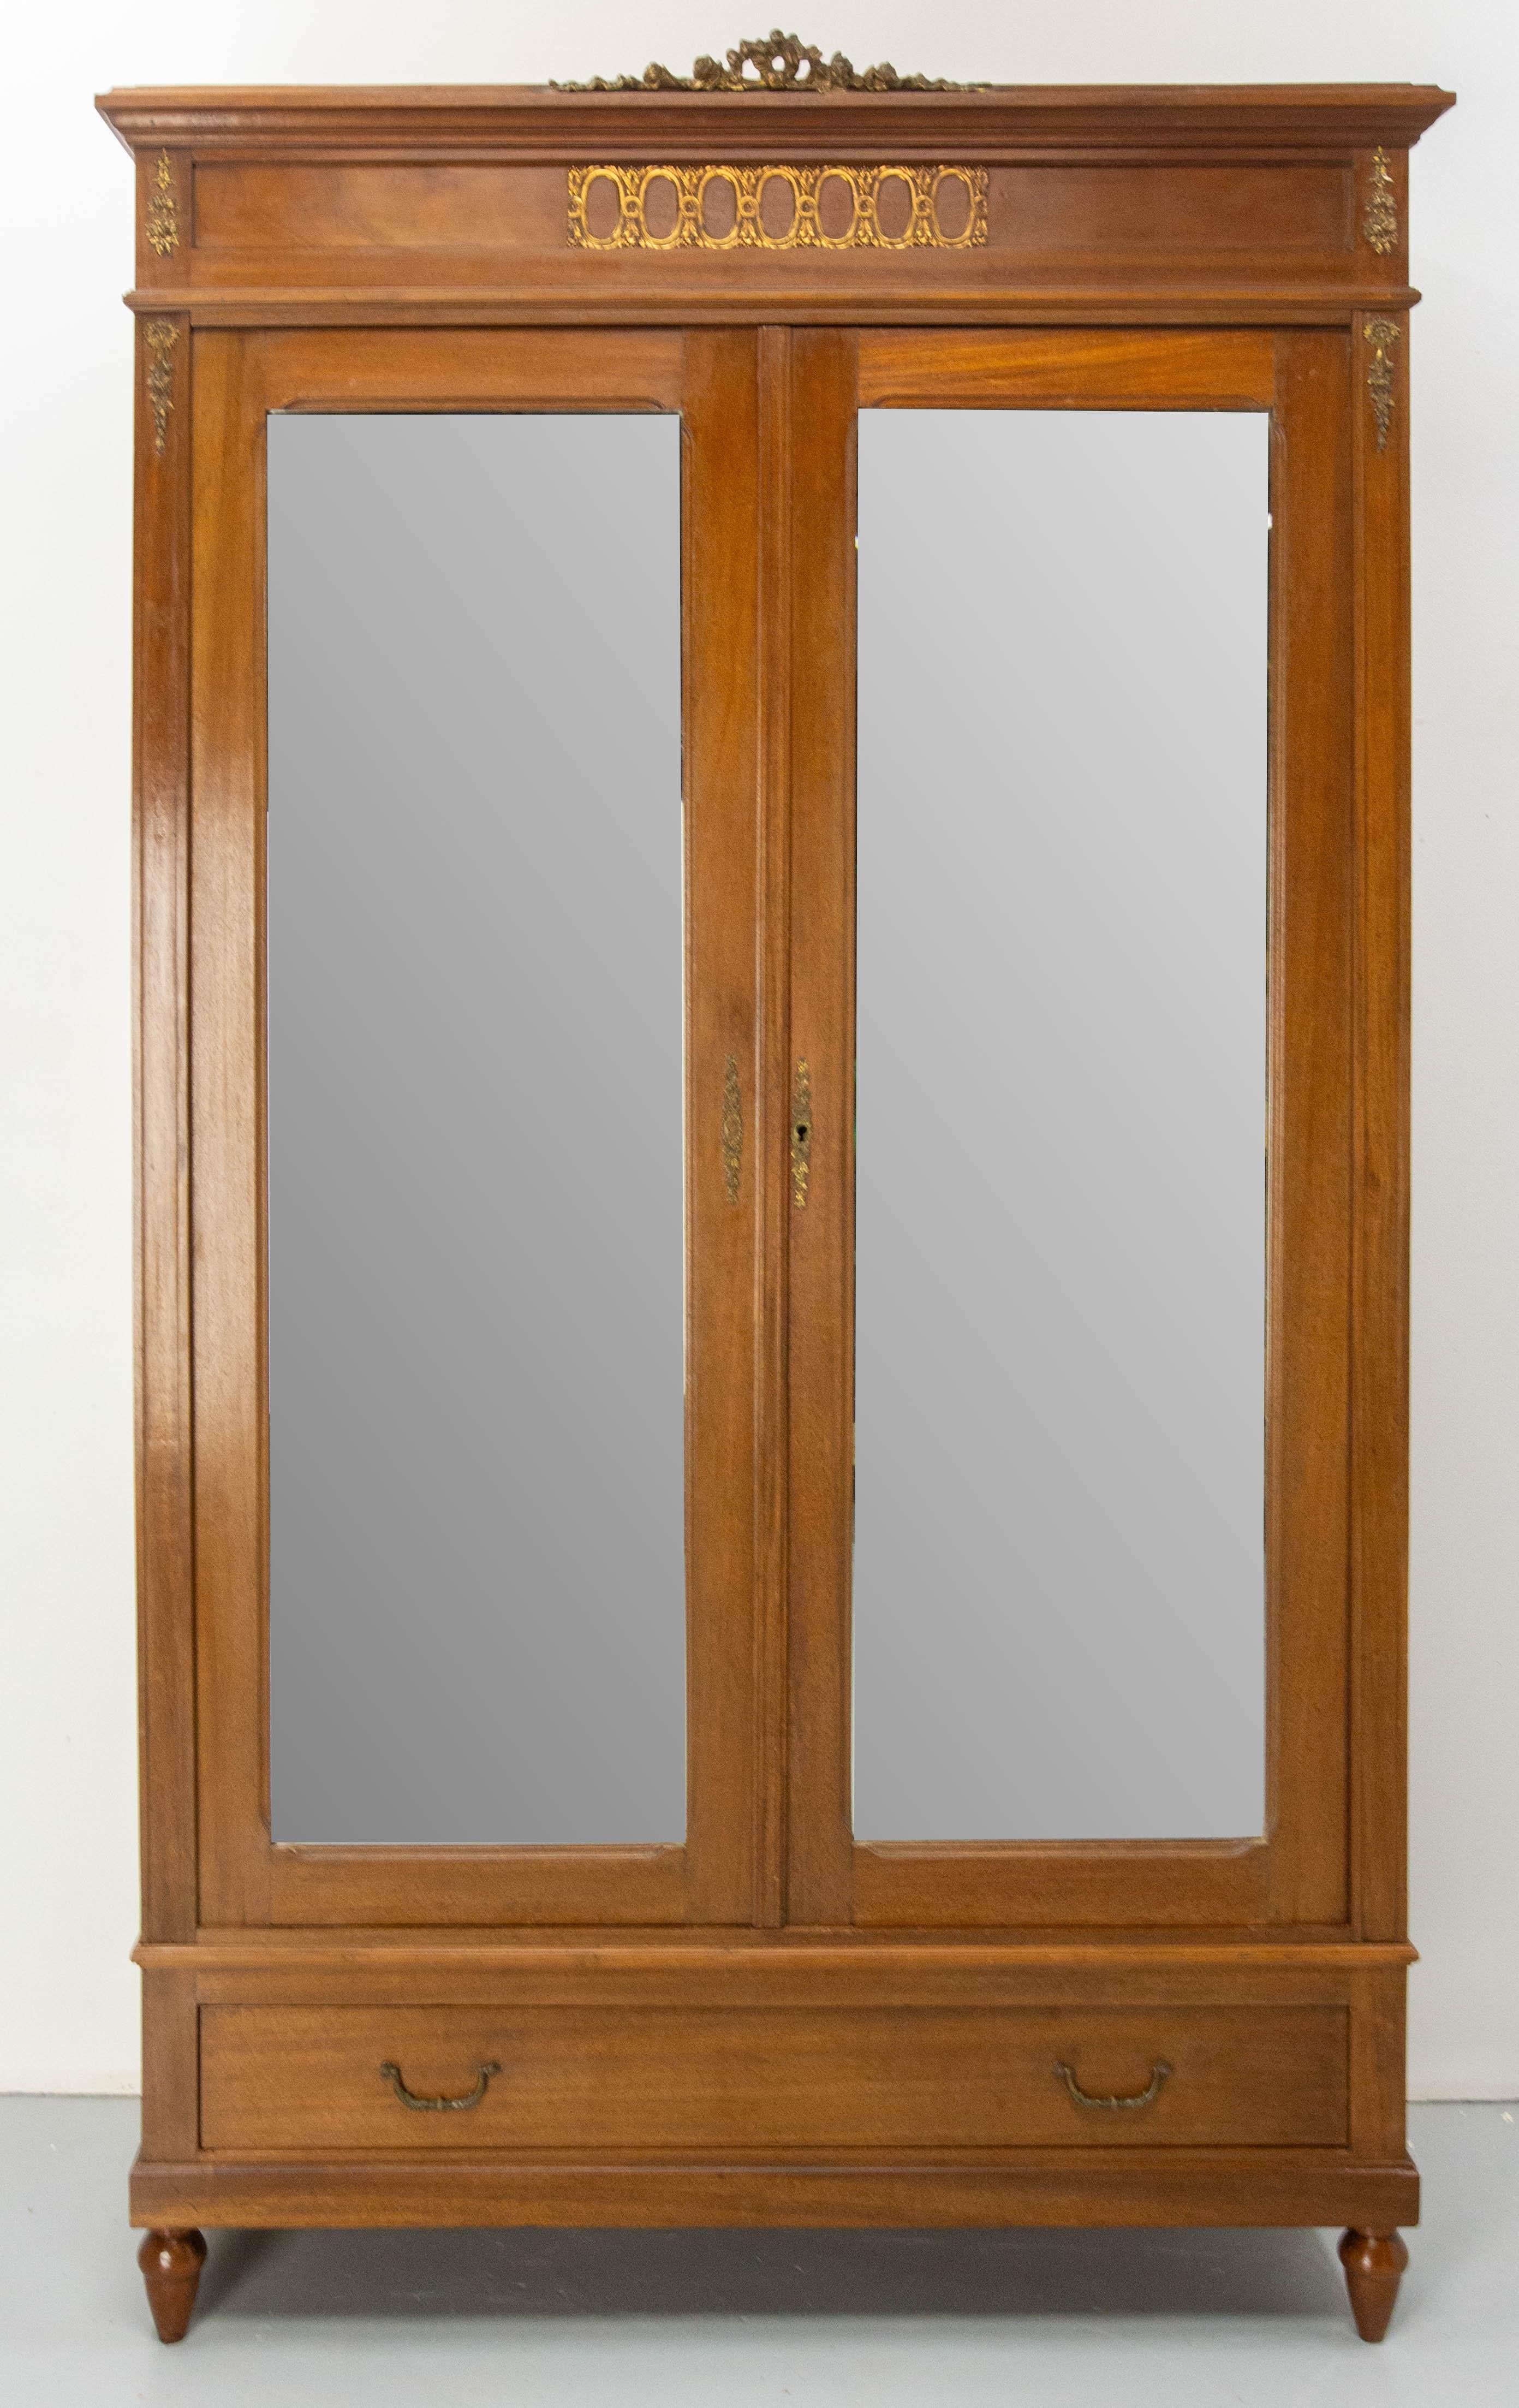 Französischer Kleiderschrank mit zwei abgeschrägten Spiegeln
Revival Louis 16-Stil Iroko-Furnier.
Innen mit Regalen und zwei kleinen Schubladen ausgestattet.
Zwei Türen und eine große Schublade.
Hergestellt um 1900.
Guter Zustand, mit Spuren der